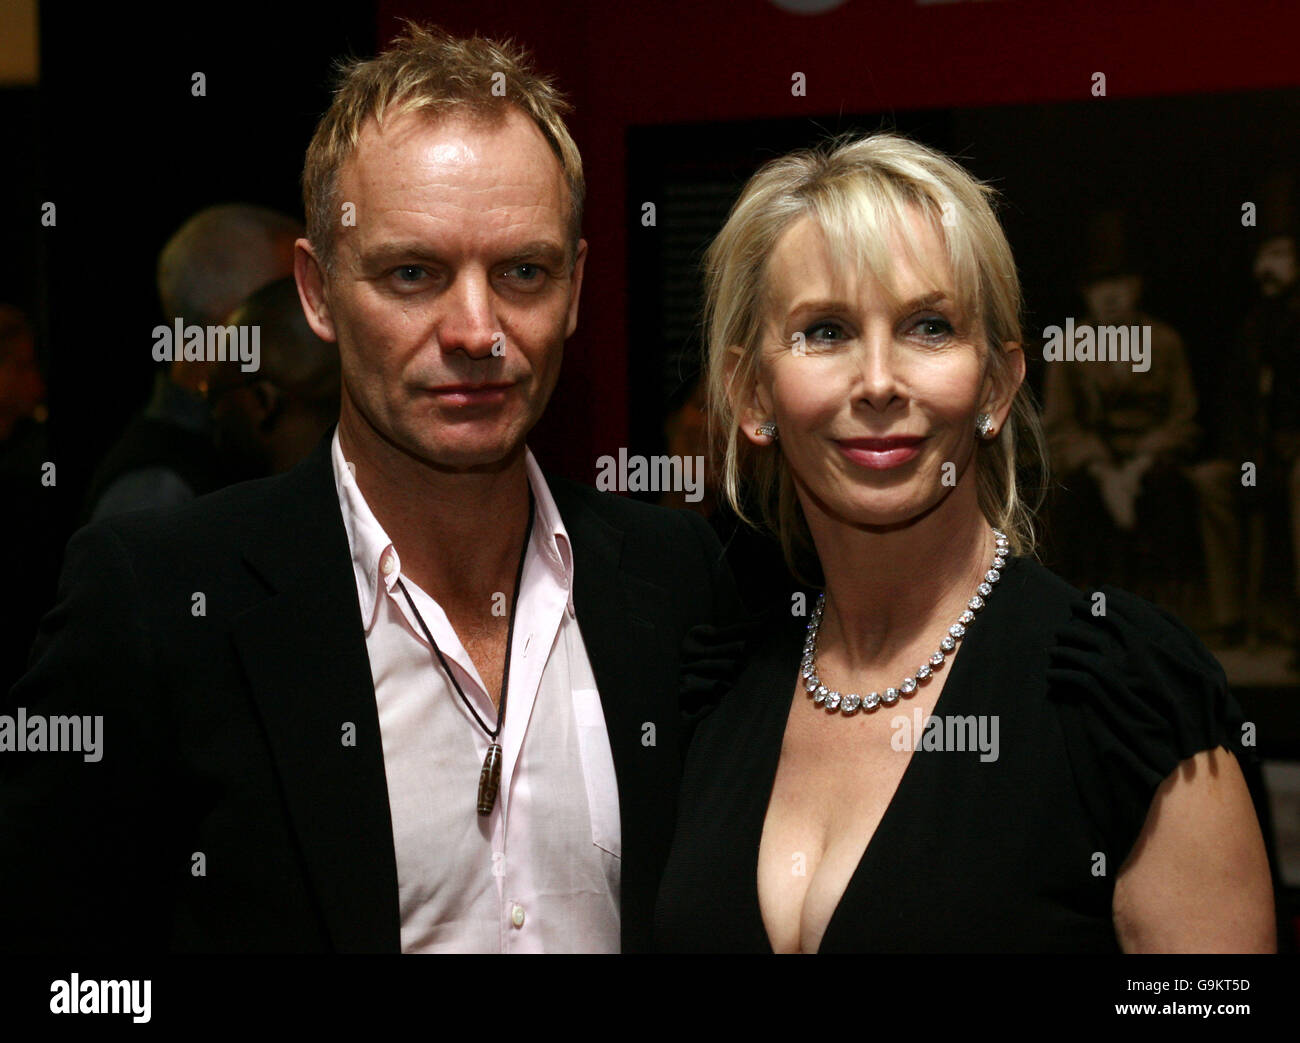 Sting e Trudie Styler alla serata di gala per celebrare il lavoro del Princes Trust tenuto presso la Roundhouse di Camden, a nord di Londra. Foto Stock